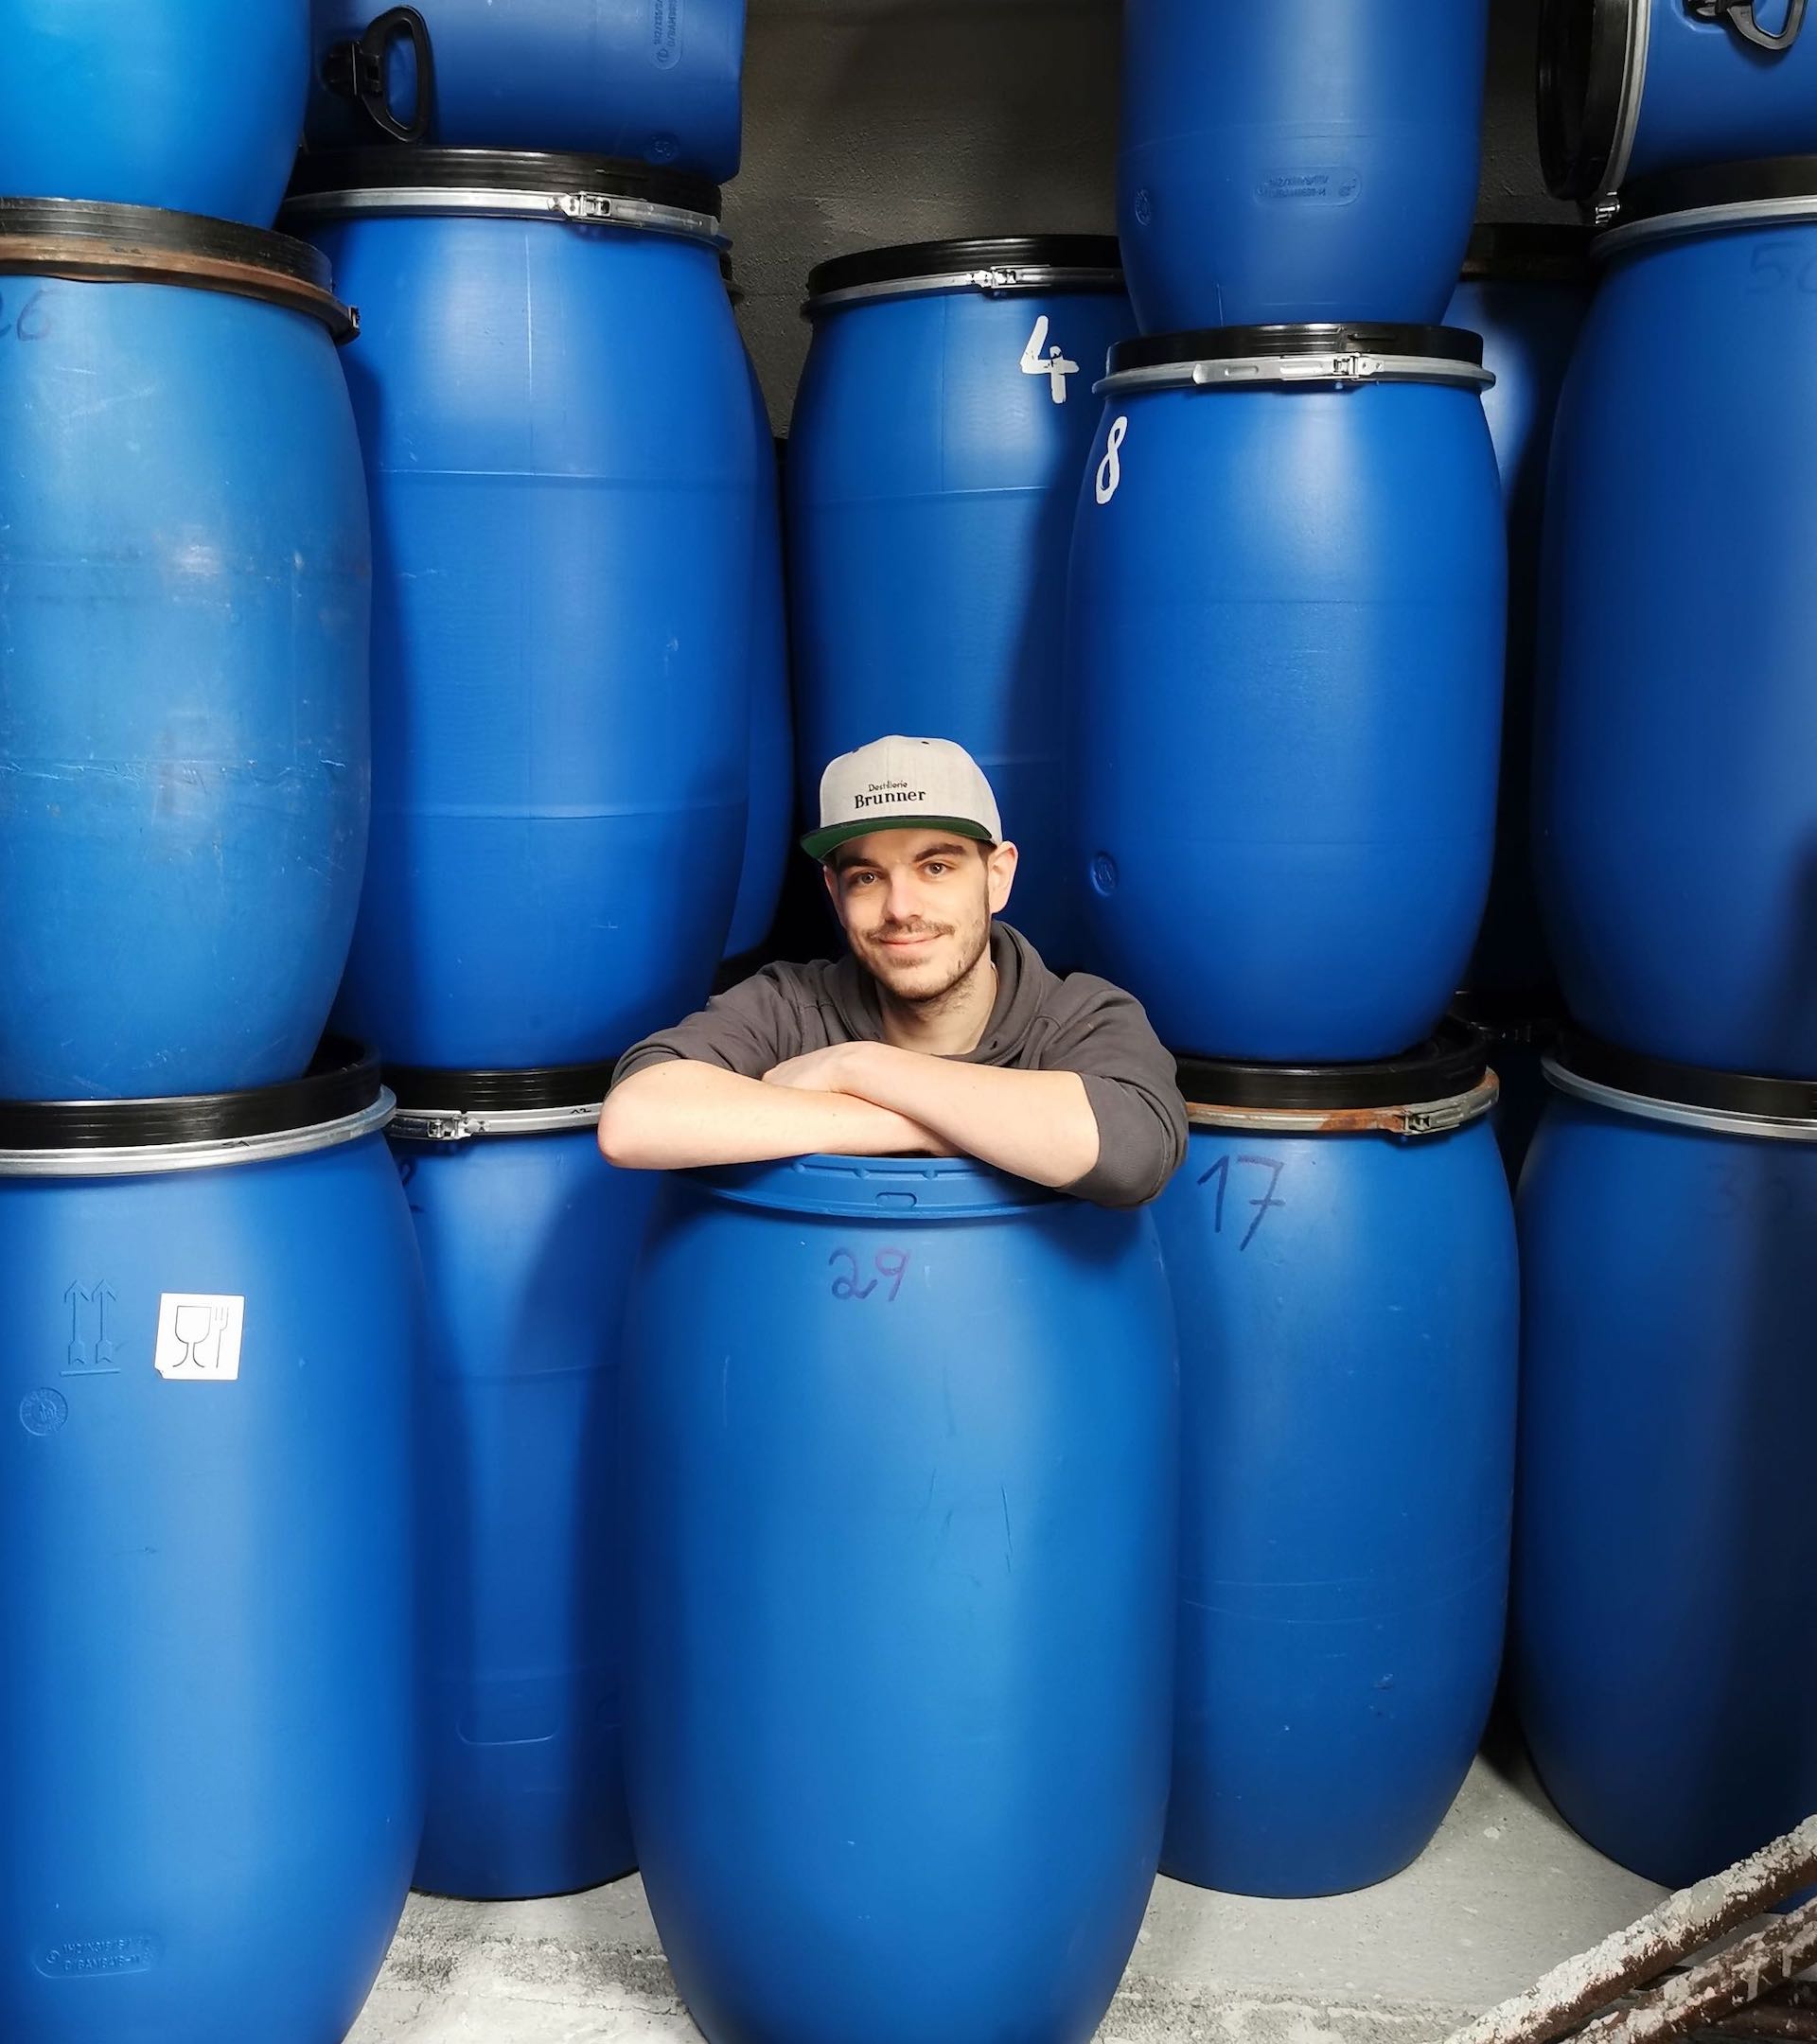 Daniel Brunner sitzend und lächelnd in blauen Maischefässern mit gebrandeter Destillerie Brunner Flexfit auf dem Kopf.